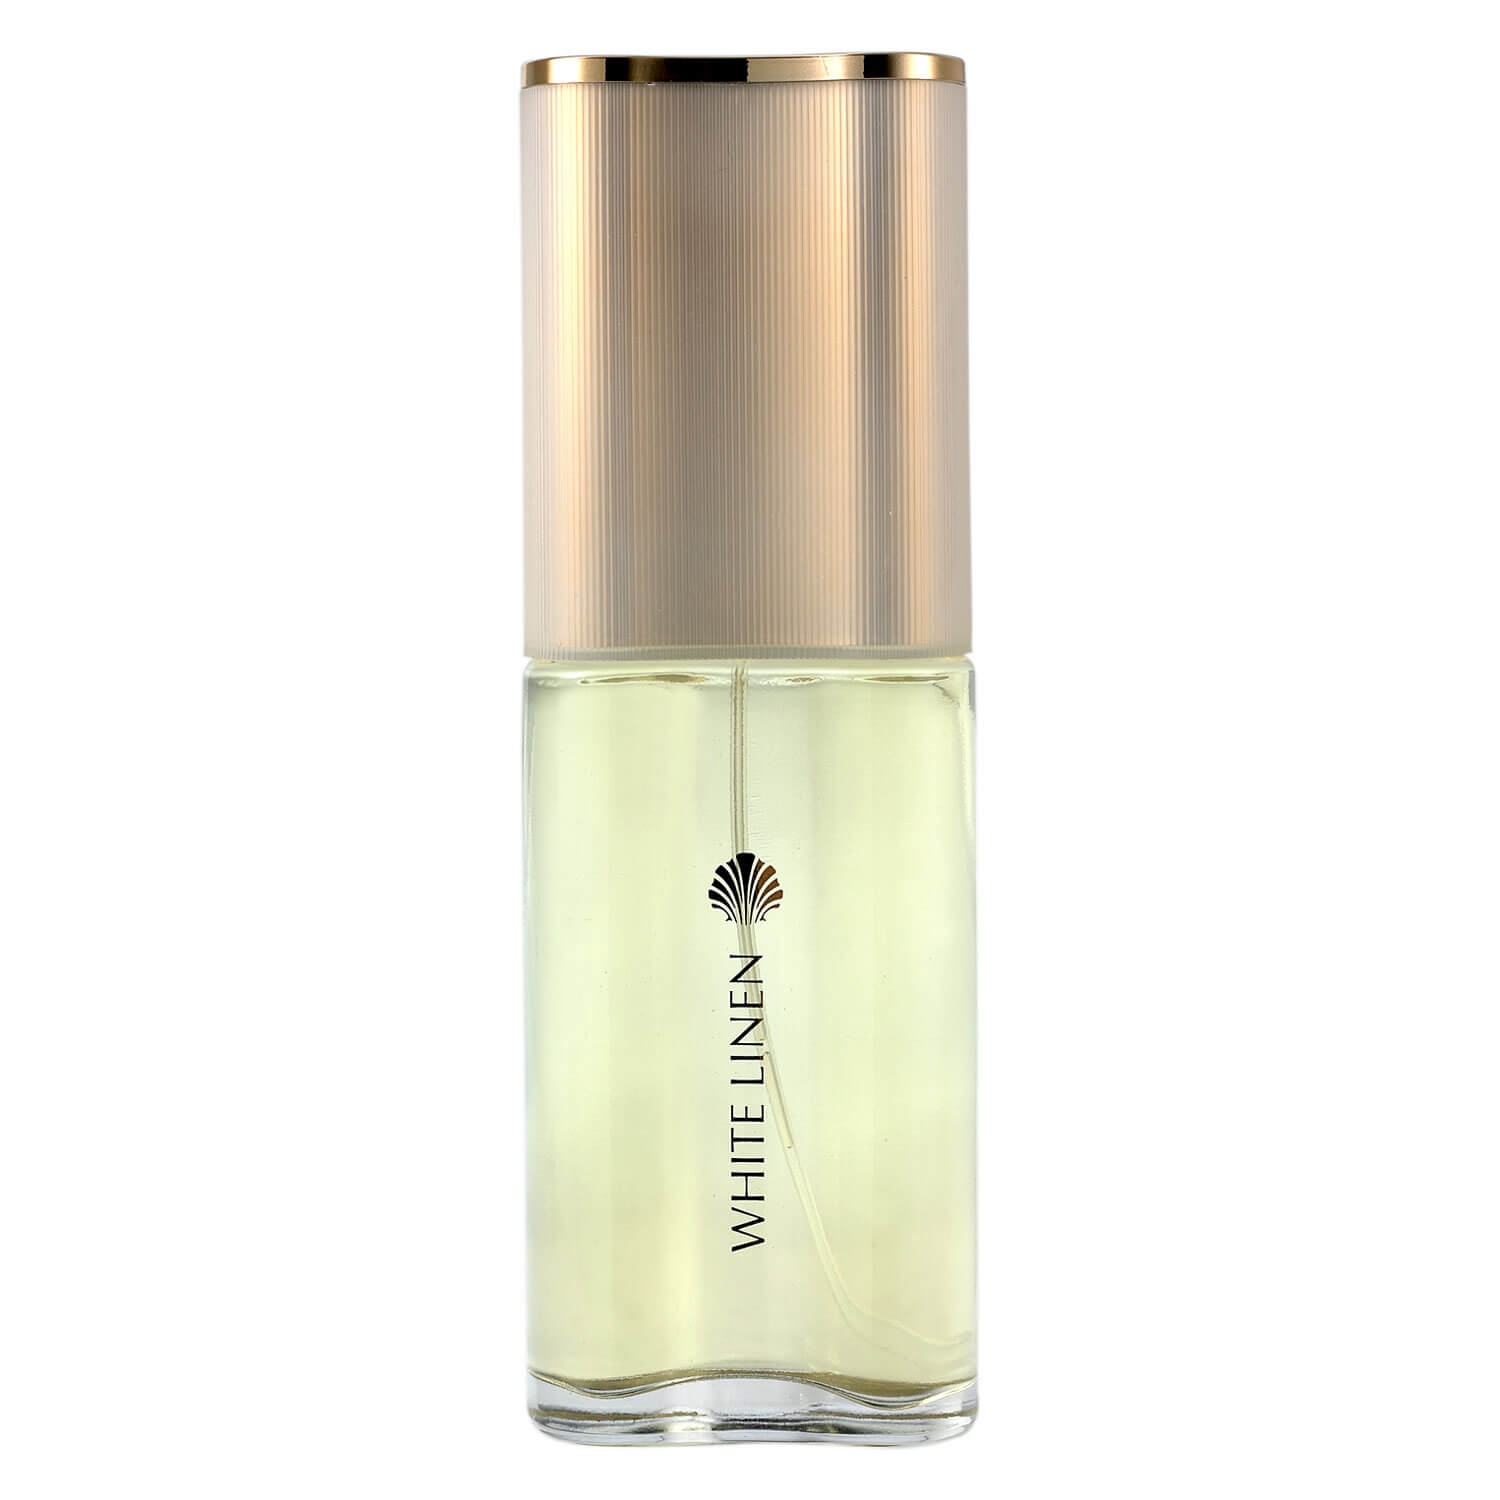 Produktbild von White Linen - Eau de Parfum Spray